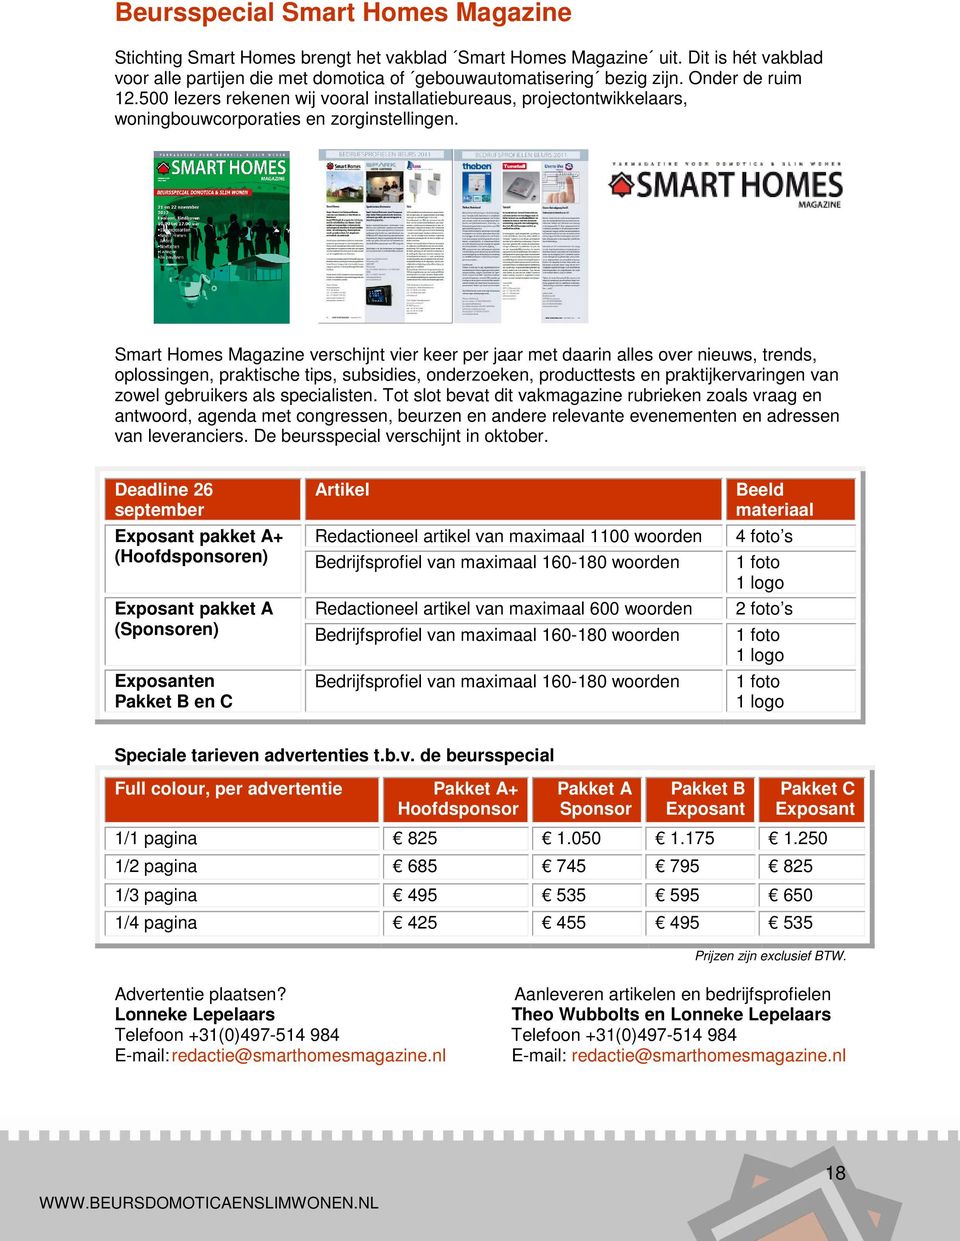 Smart Homes Magazine verschijnt vier keer per jaar met daarin alles over nieuws, trends, oplossingen, praktische tips, subsidies, onderzoeken, producttests en praktijkervaringen van zowel gebruikers